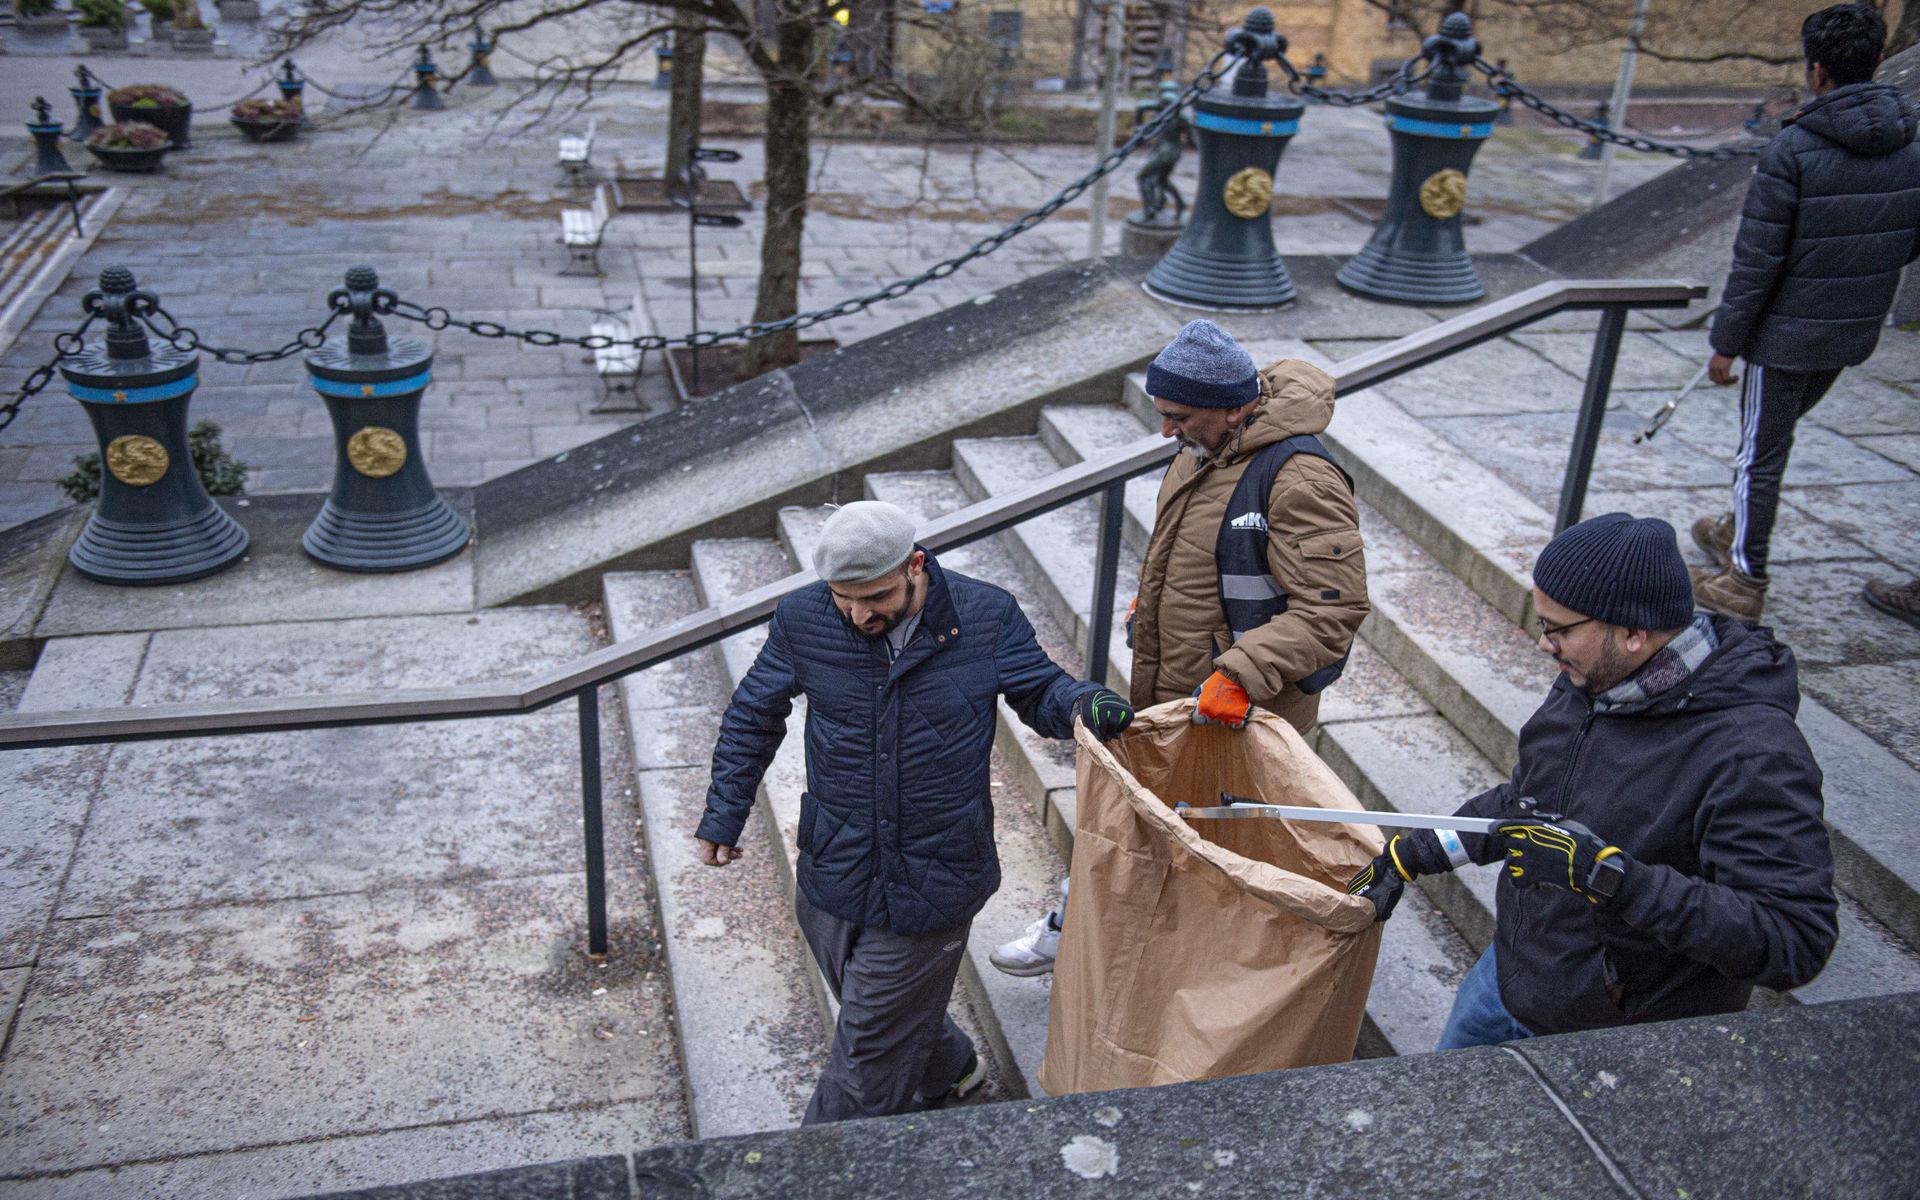 För Ahmadiyya Muslimska samfundet började dagen med en morgonbön 06.00 för att sedan ta sig till Heden och Götaplatsen för att städa efter nyårsfirandet.